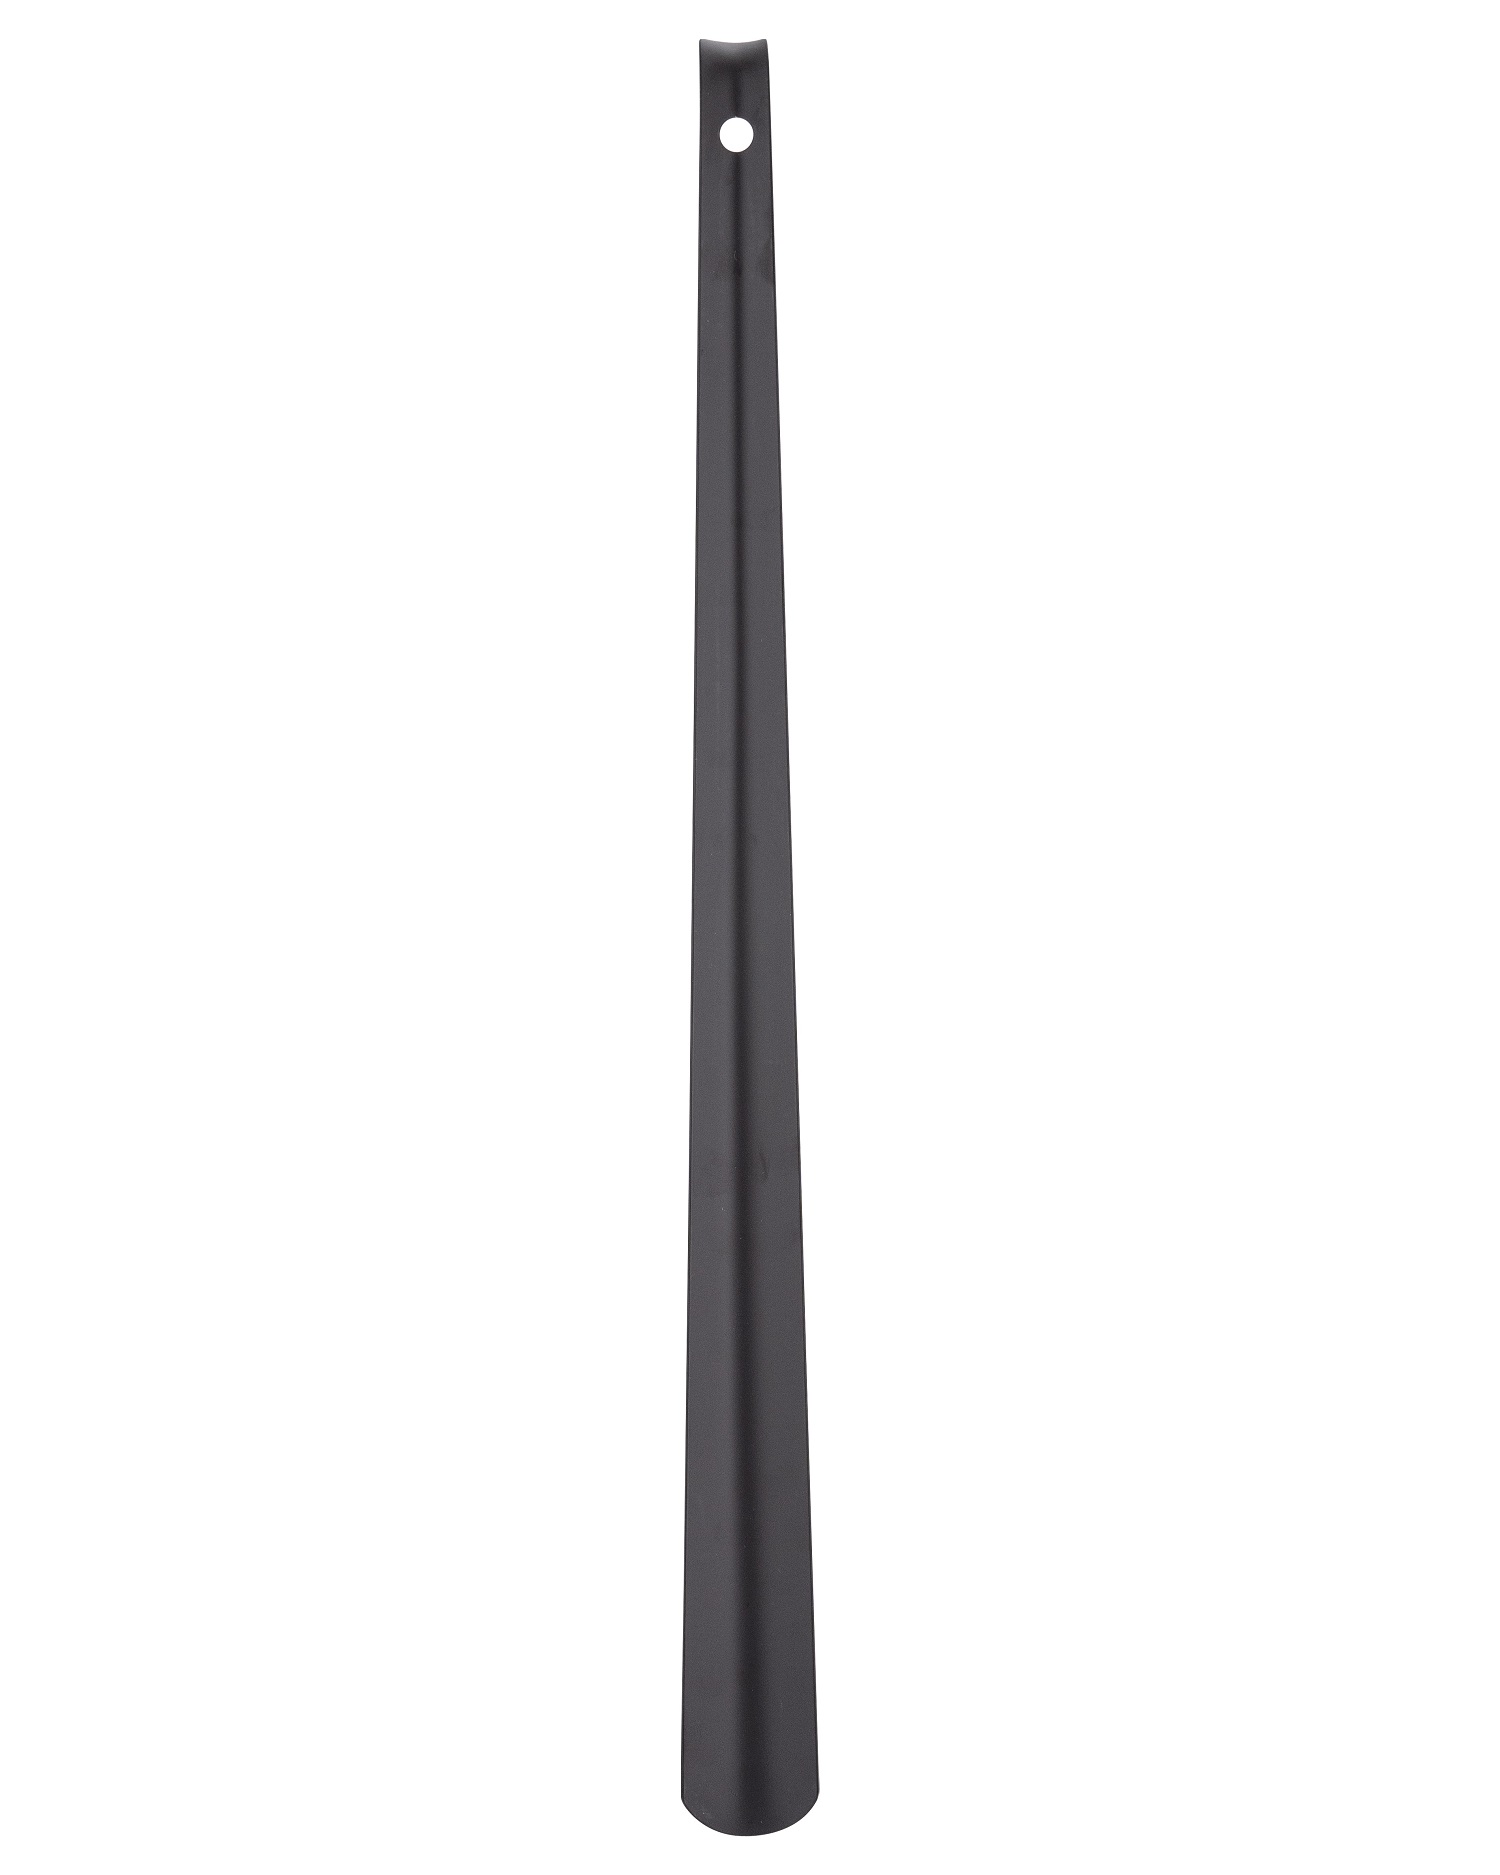 Skohorn metall 59 cm, matt svart